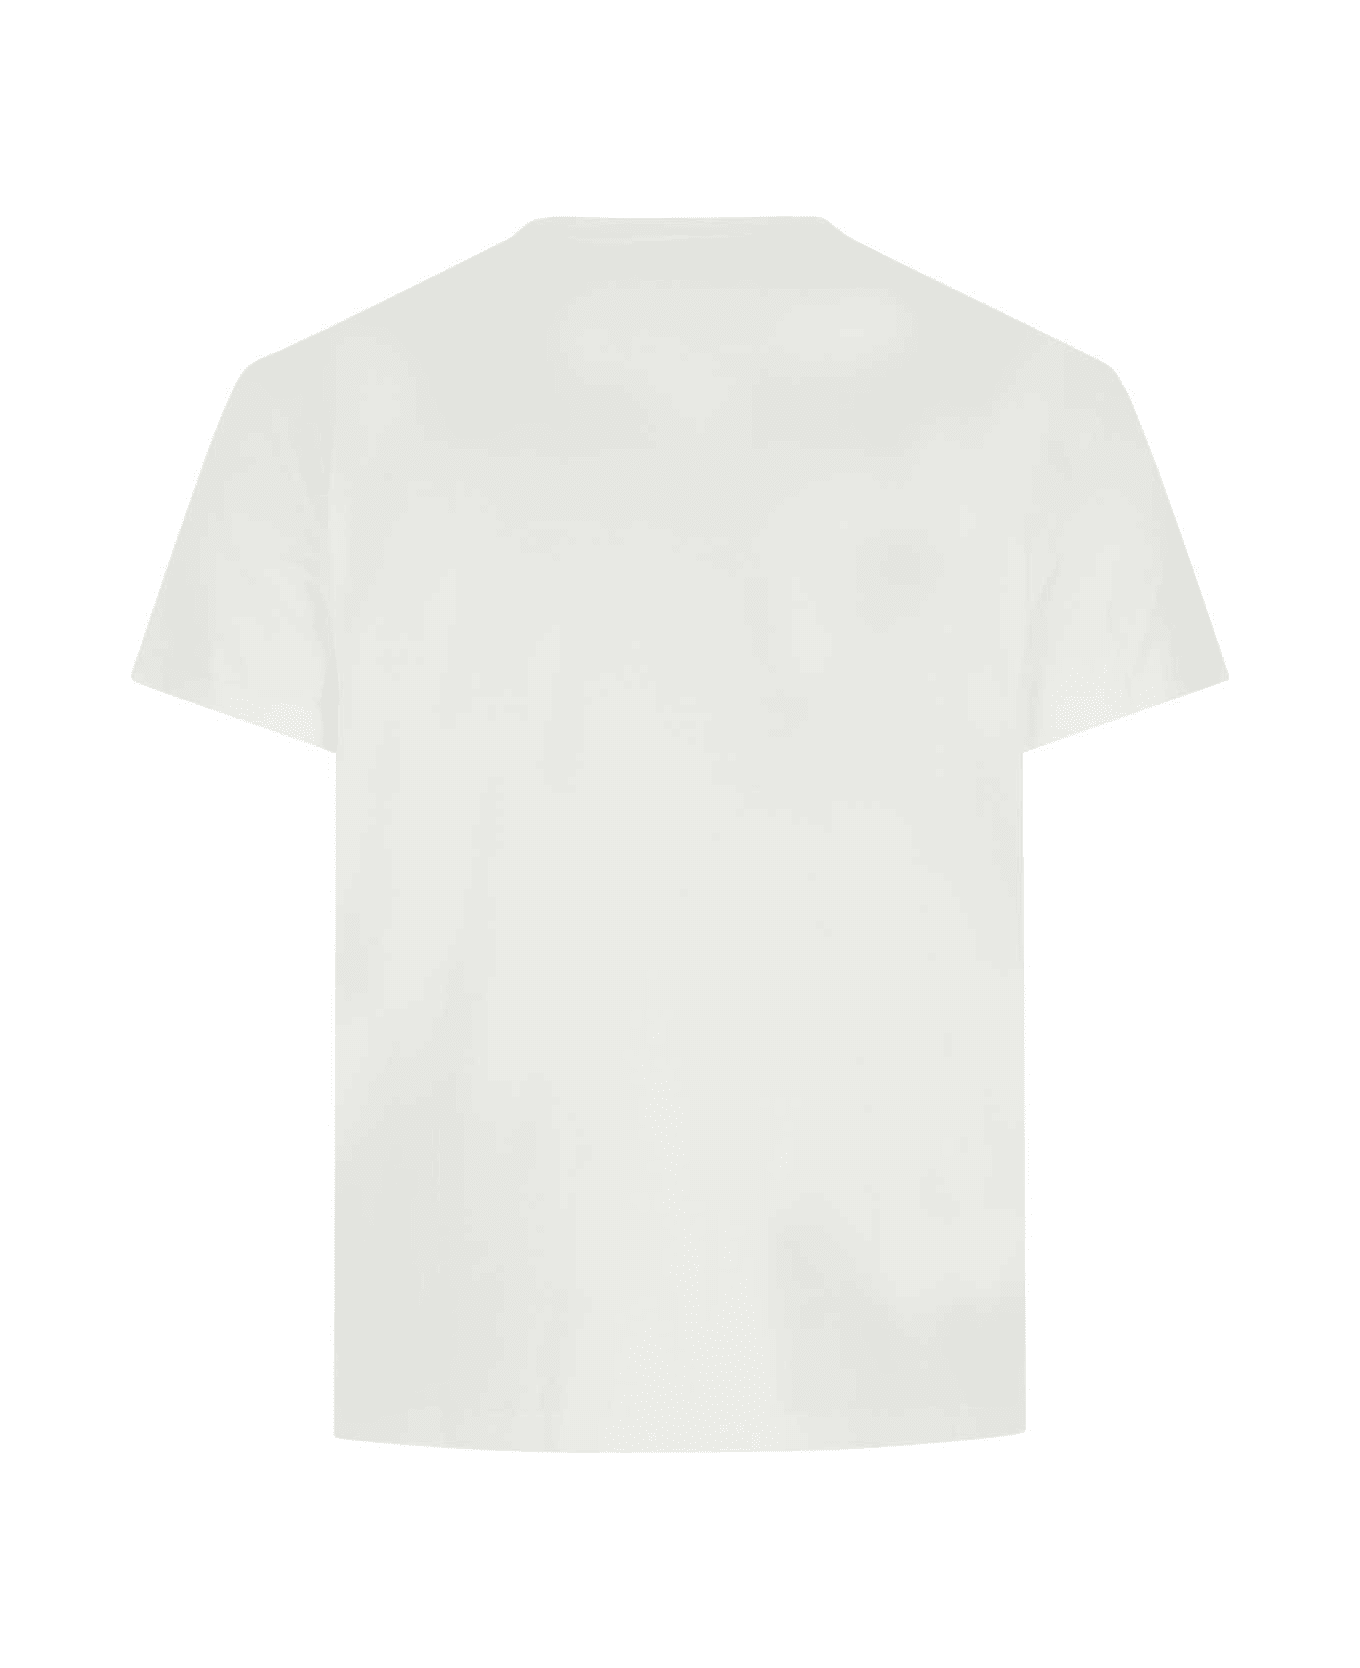 Maison Margiela White Cotton T-shirt - 994